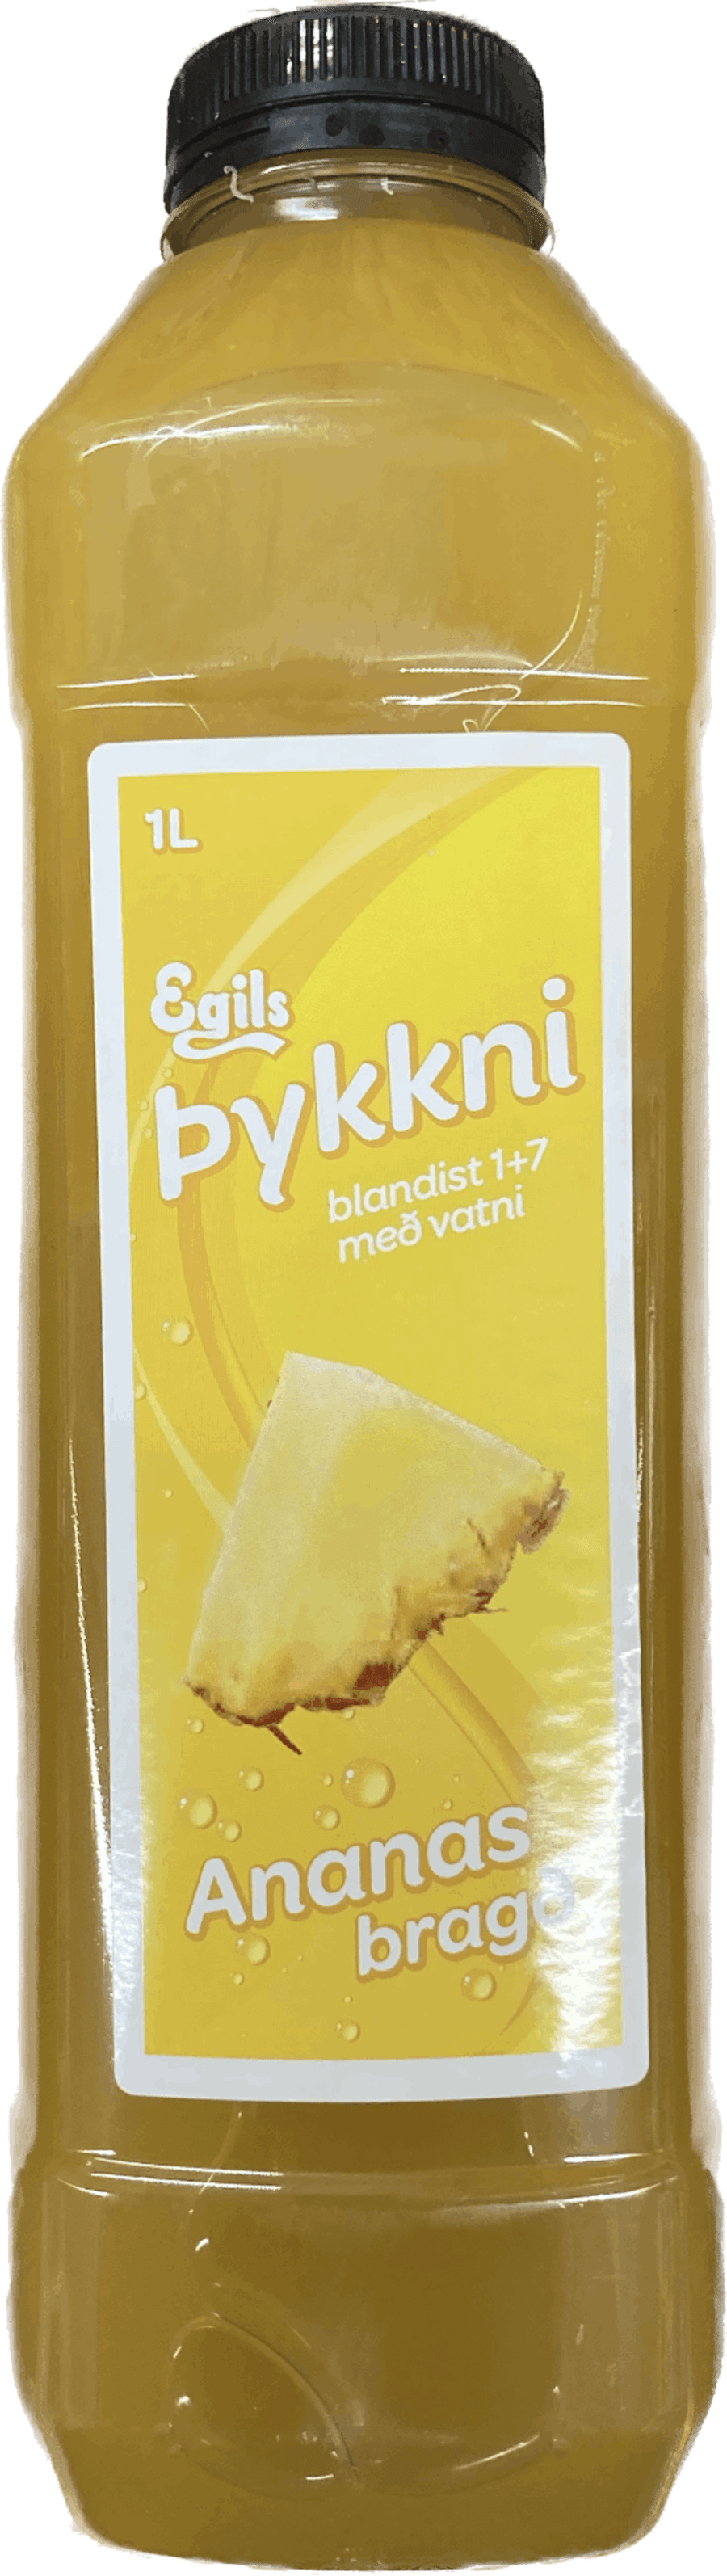 Egils þykkni ananas 1ltr